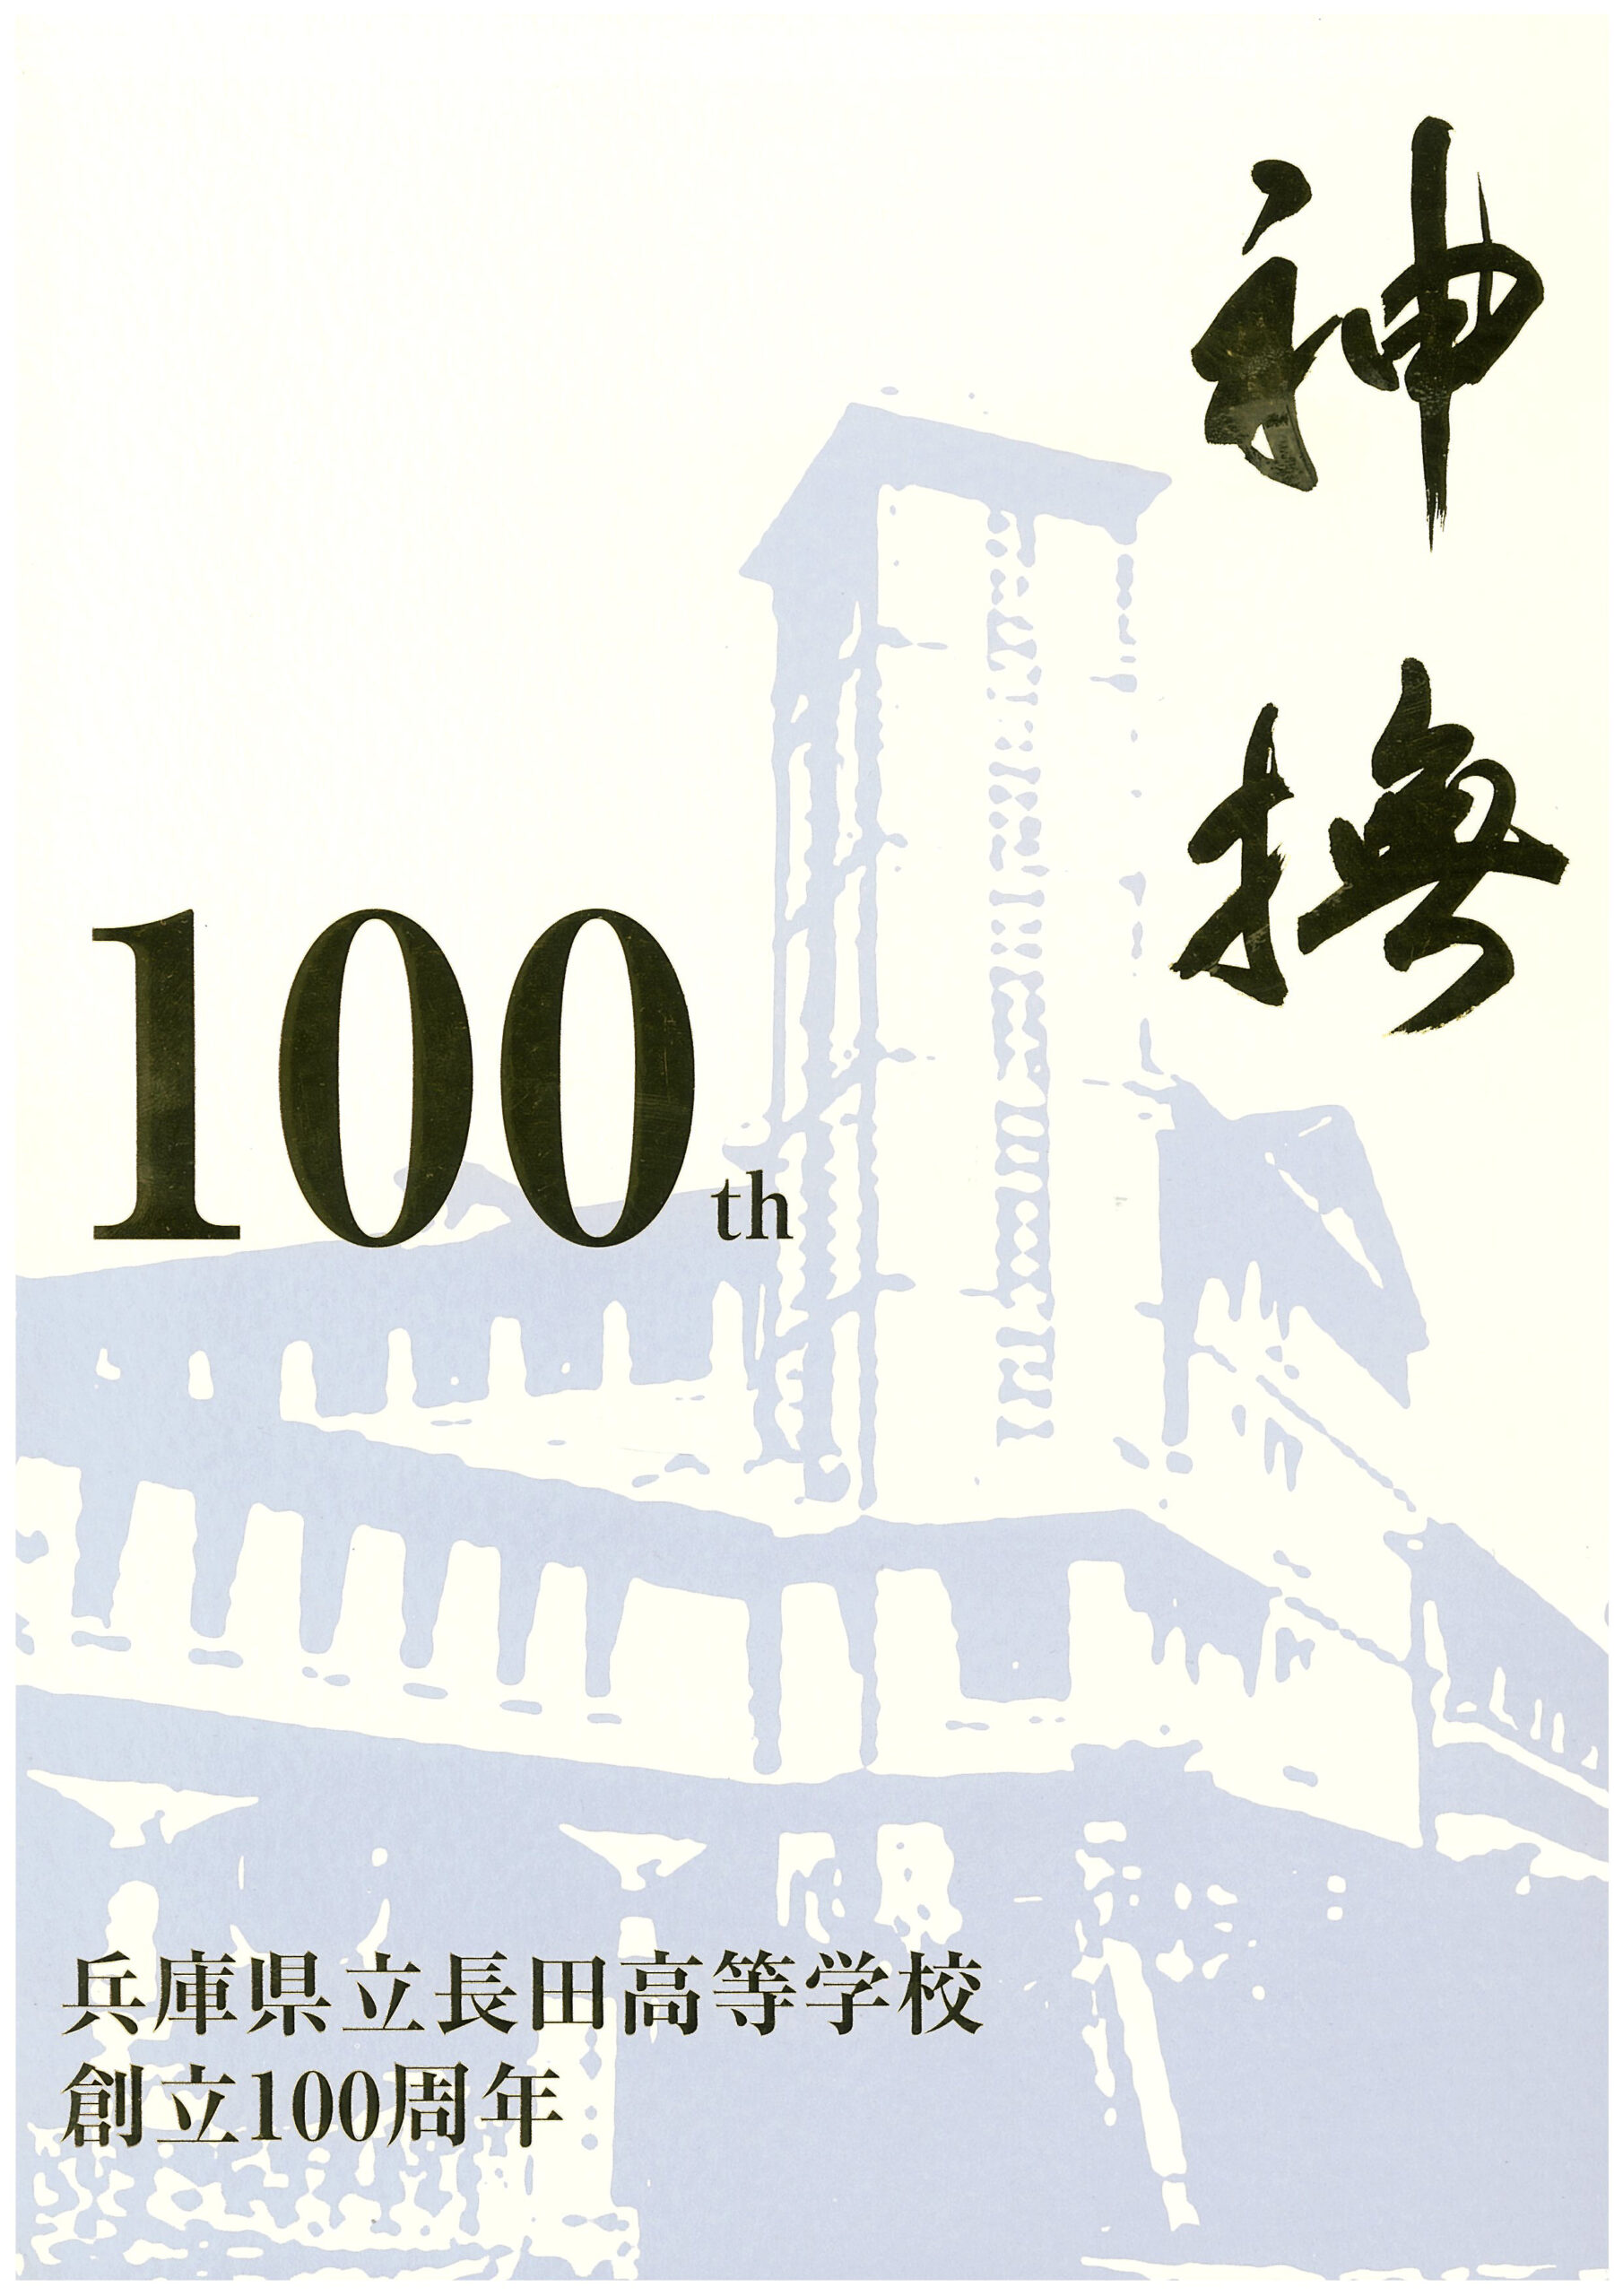 専門店 美なりや翠嵐 創立100周年記念誌